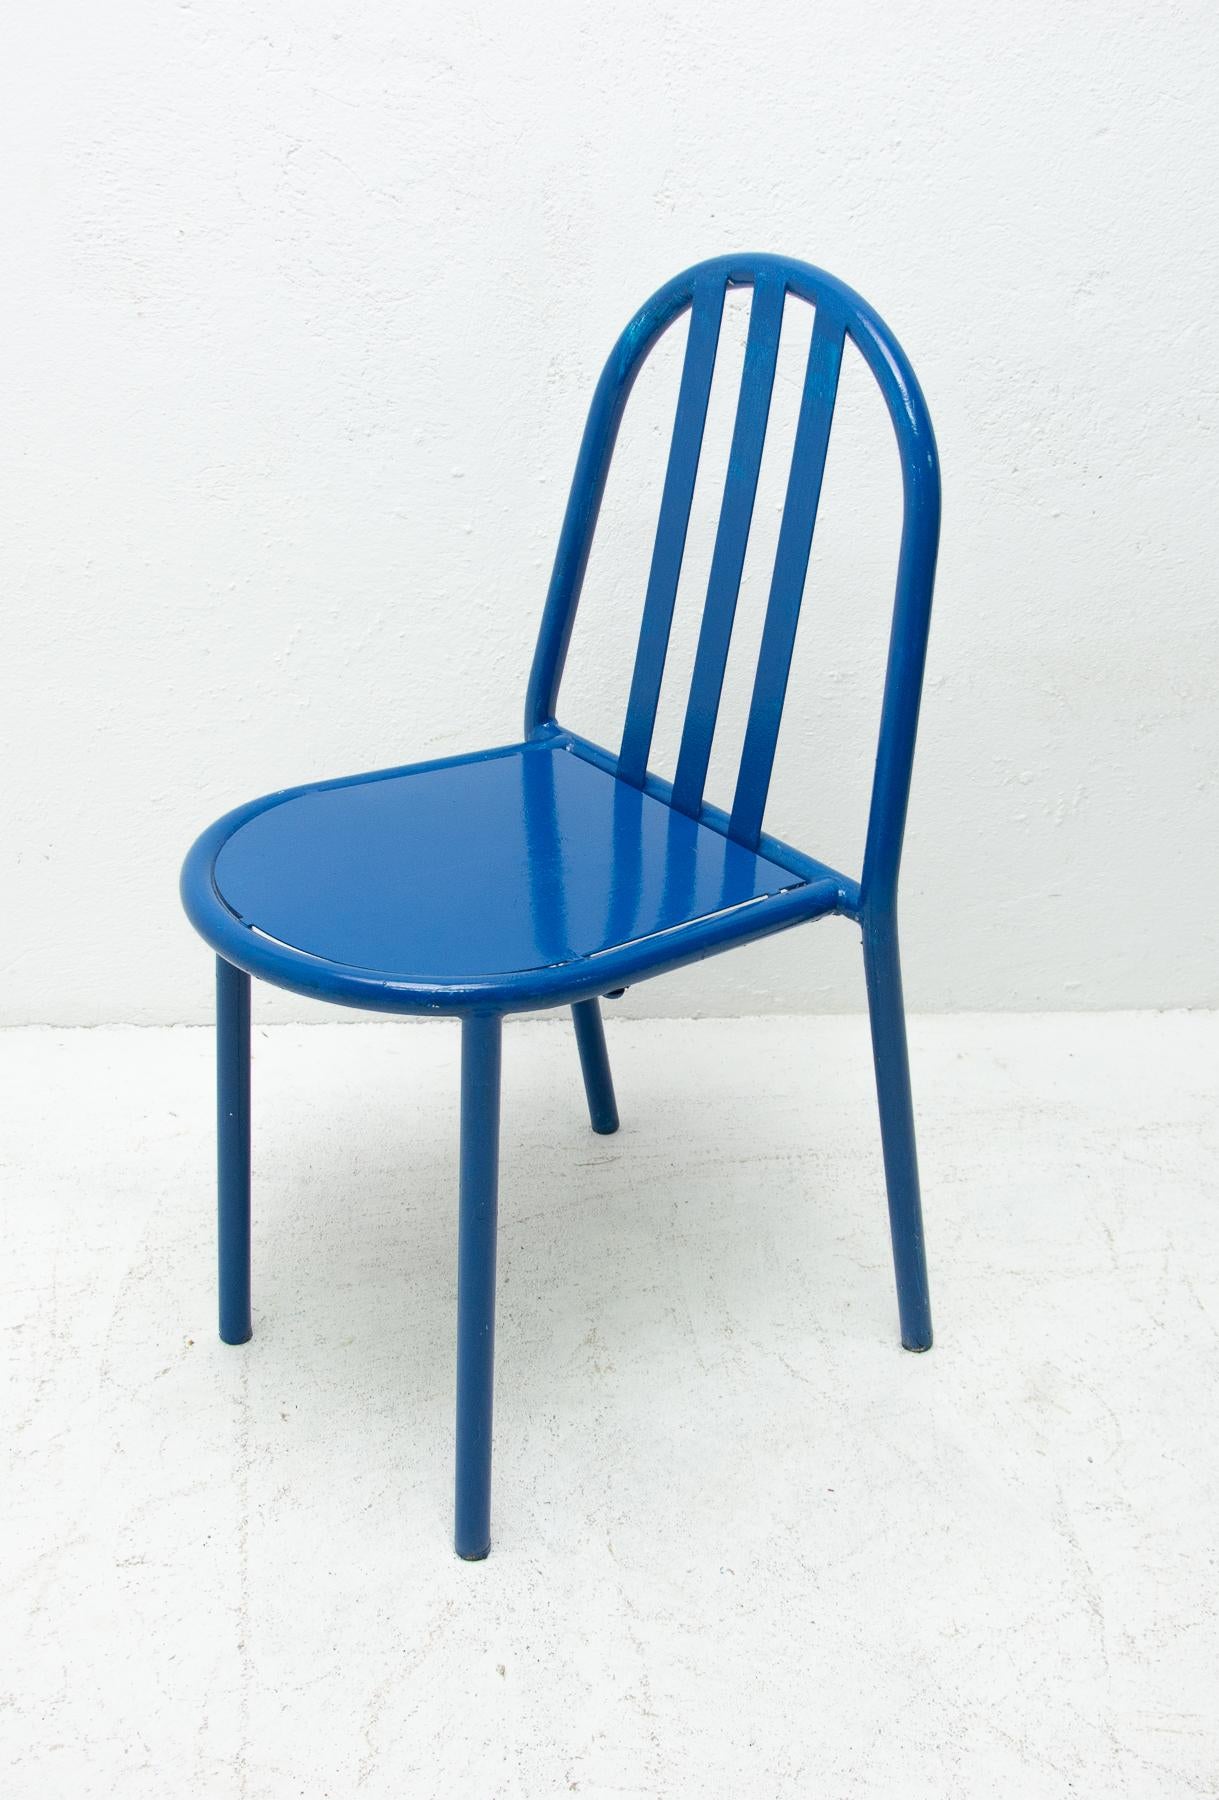 Model No.222 Bauhaus Chairs by Robert Mallet-Stevens, 1960s 4